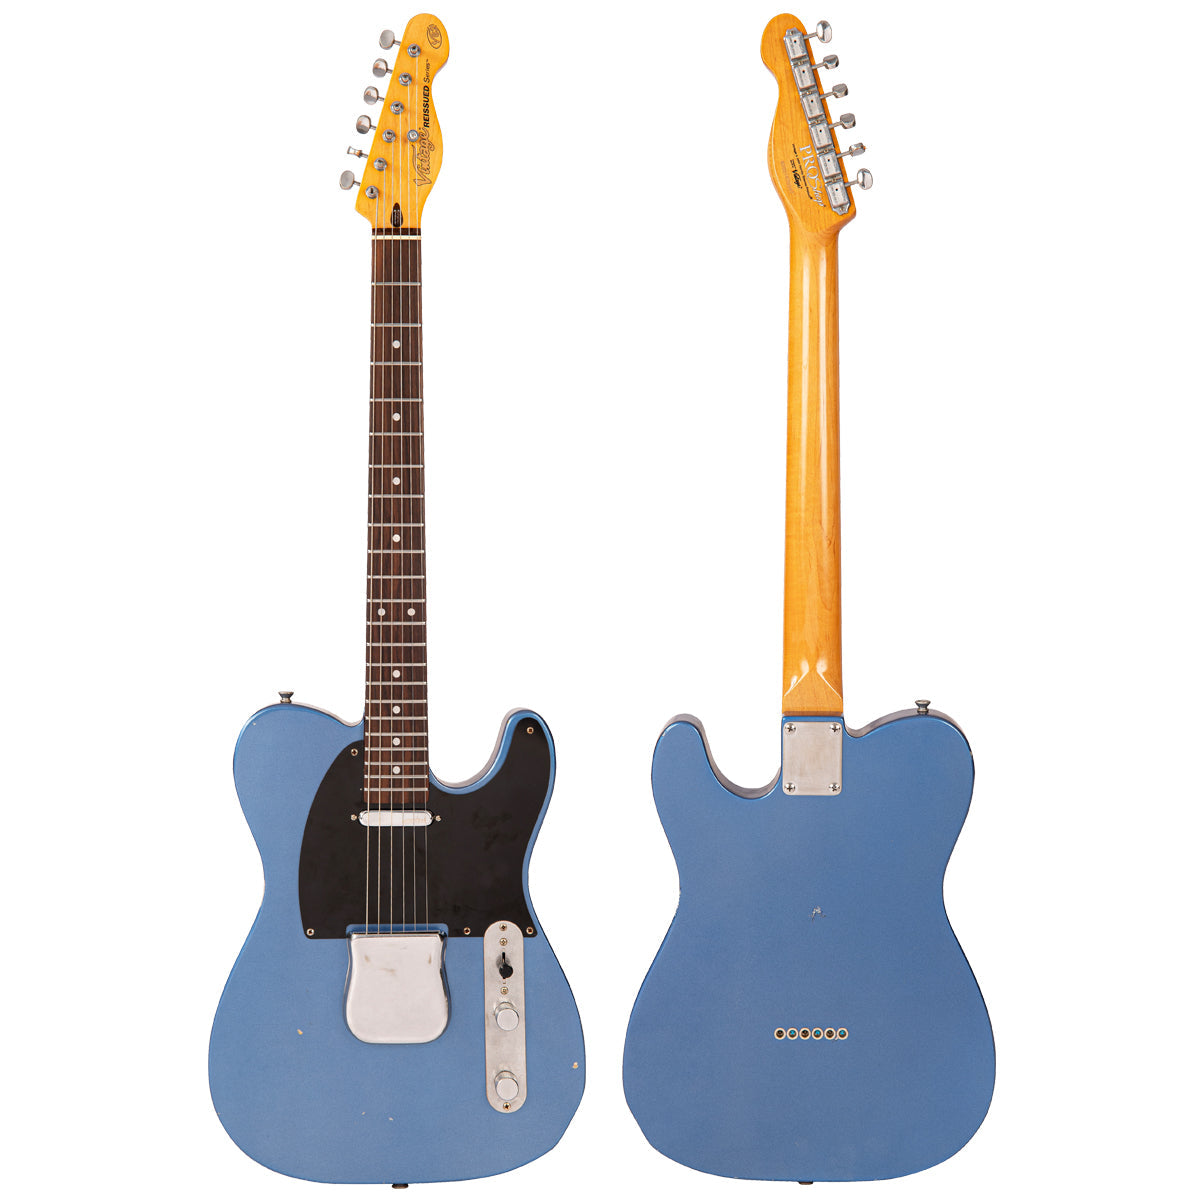 SOLD - Vintage V62 ProShop Unique ~ Cracked Metallic Blue, Electric Guitars for sale at Richards Guitars.